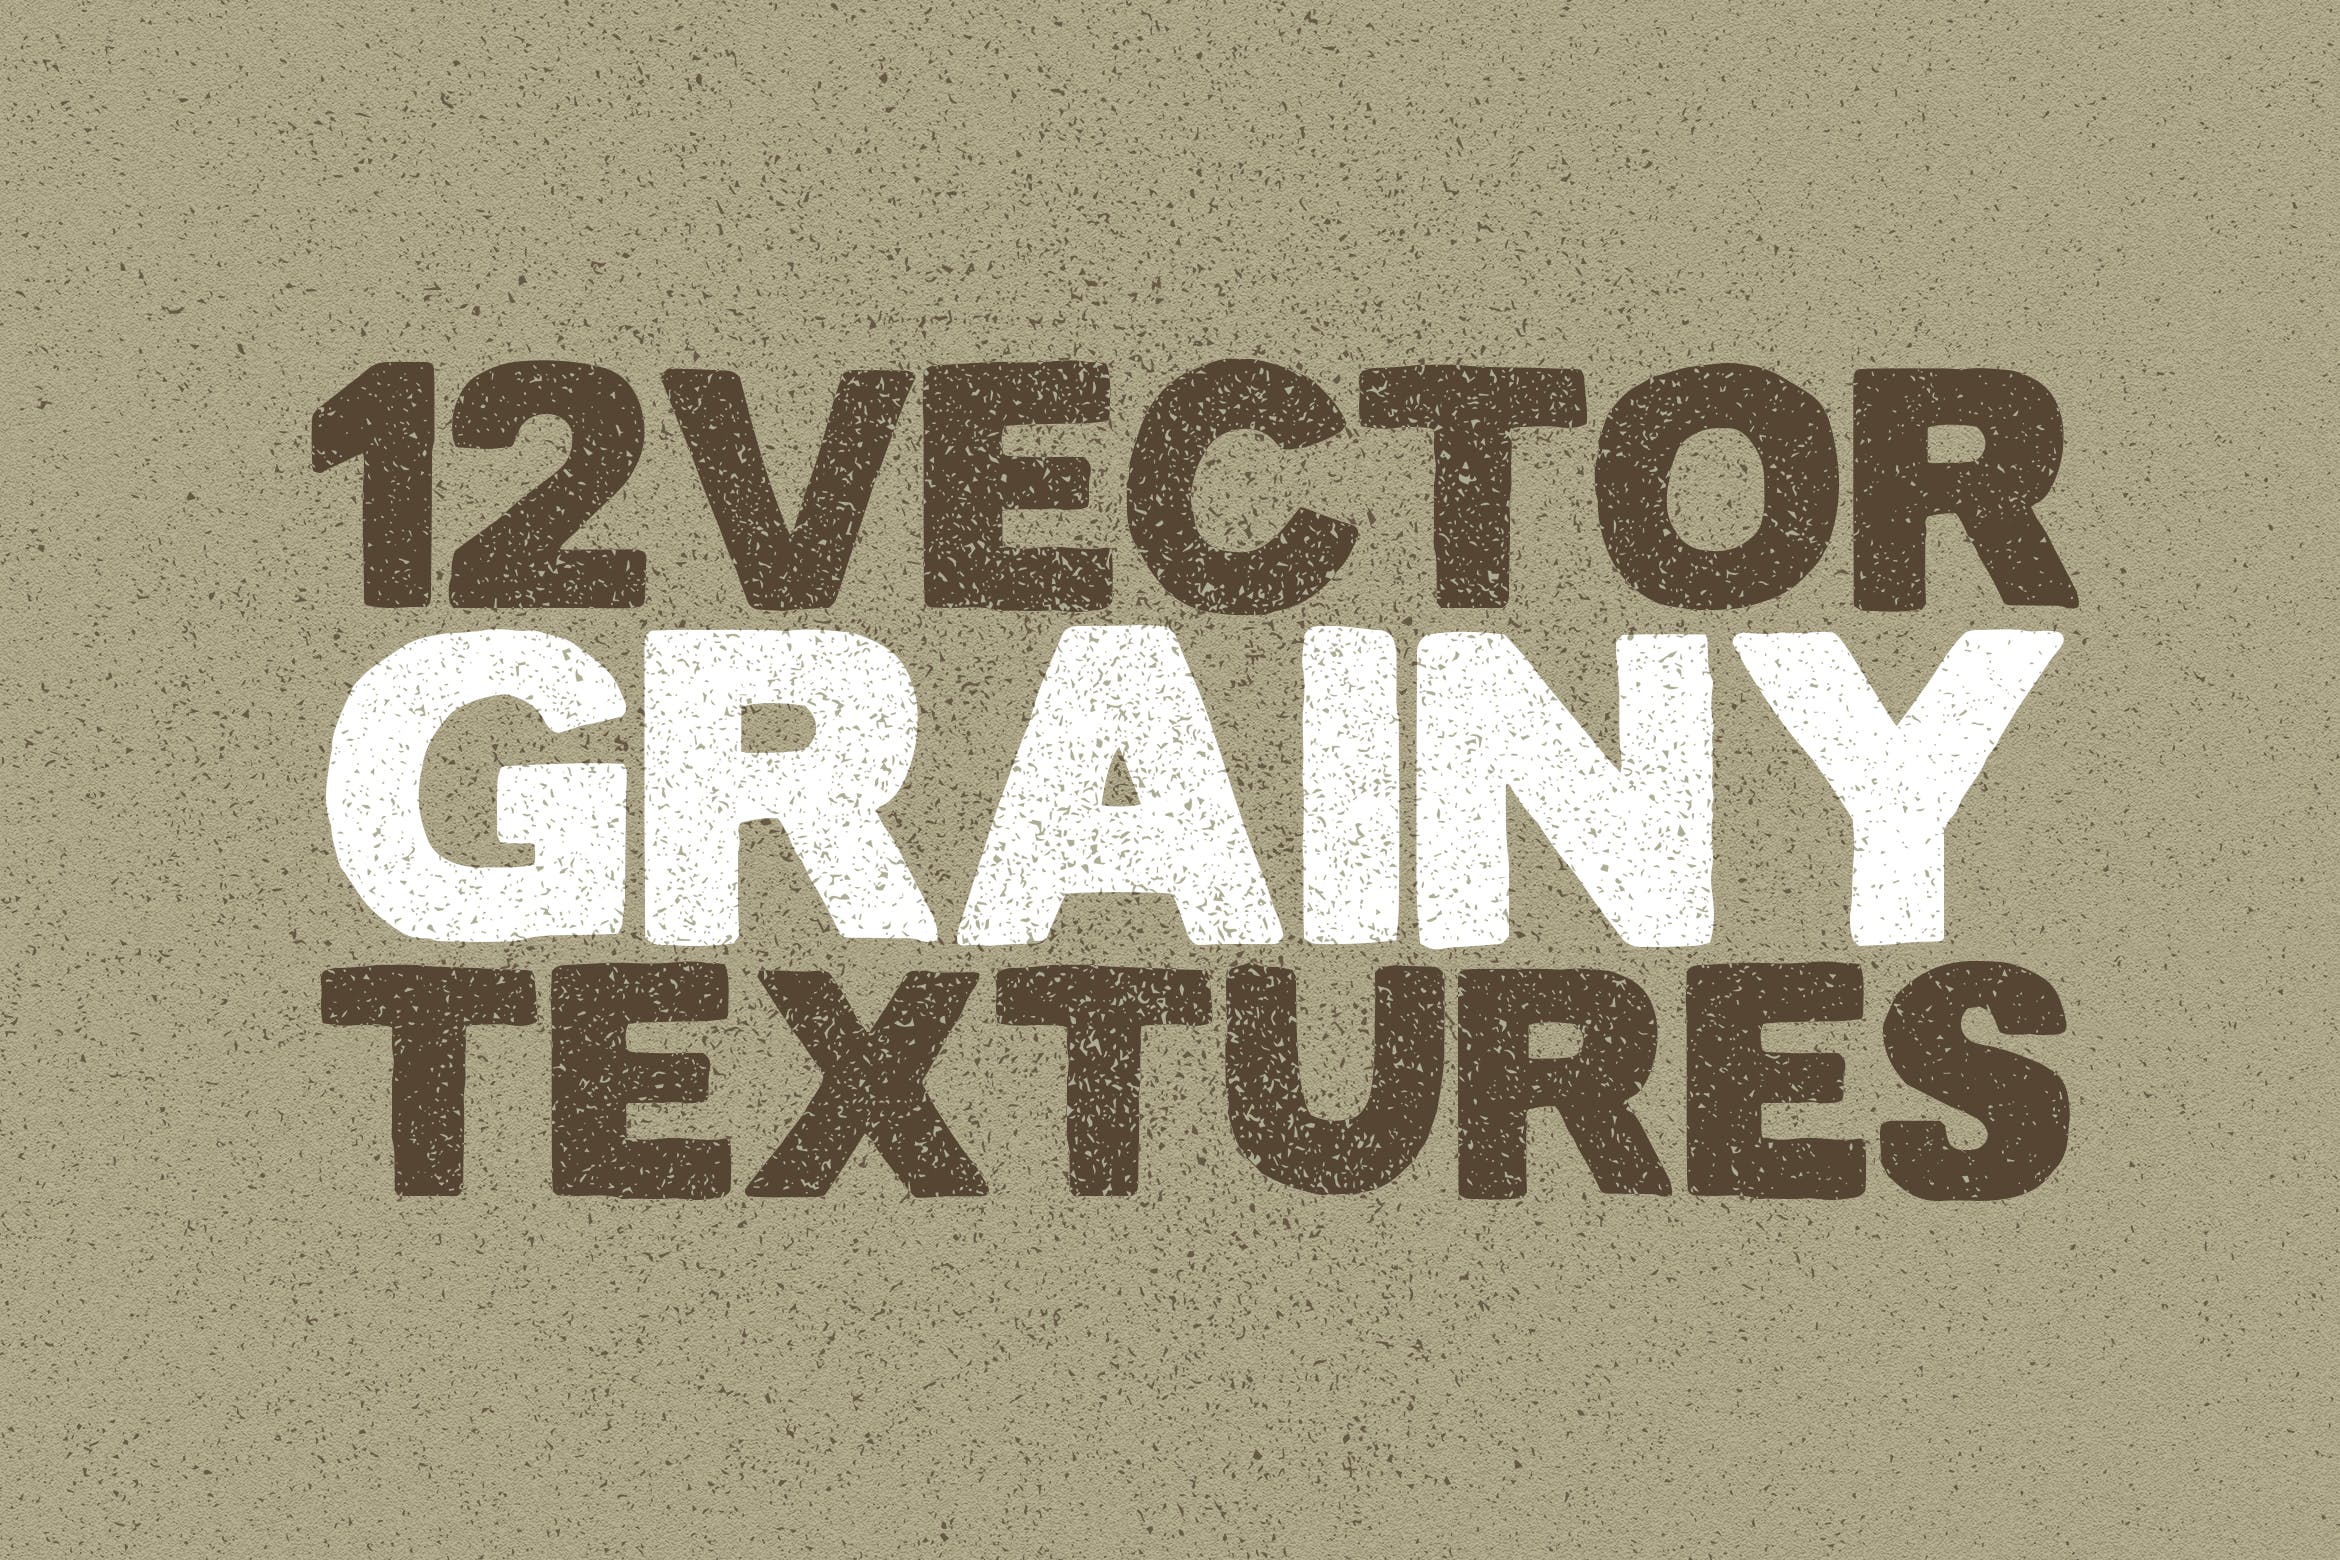 12个粒状磨砂效果矢量纹理背景素材 Vector Grainy Textures x12插图